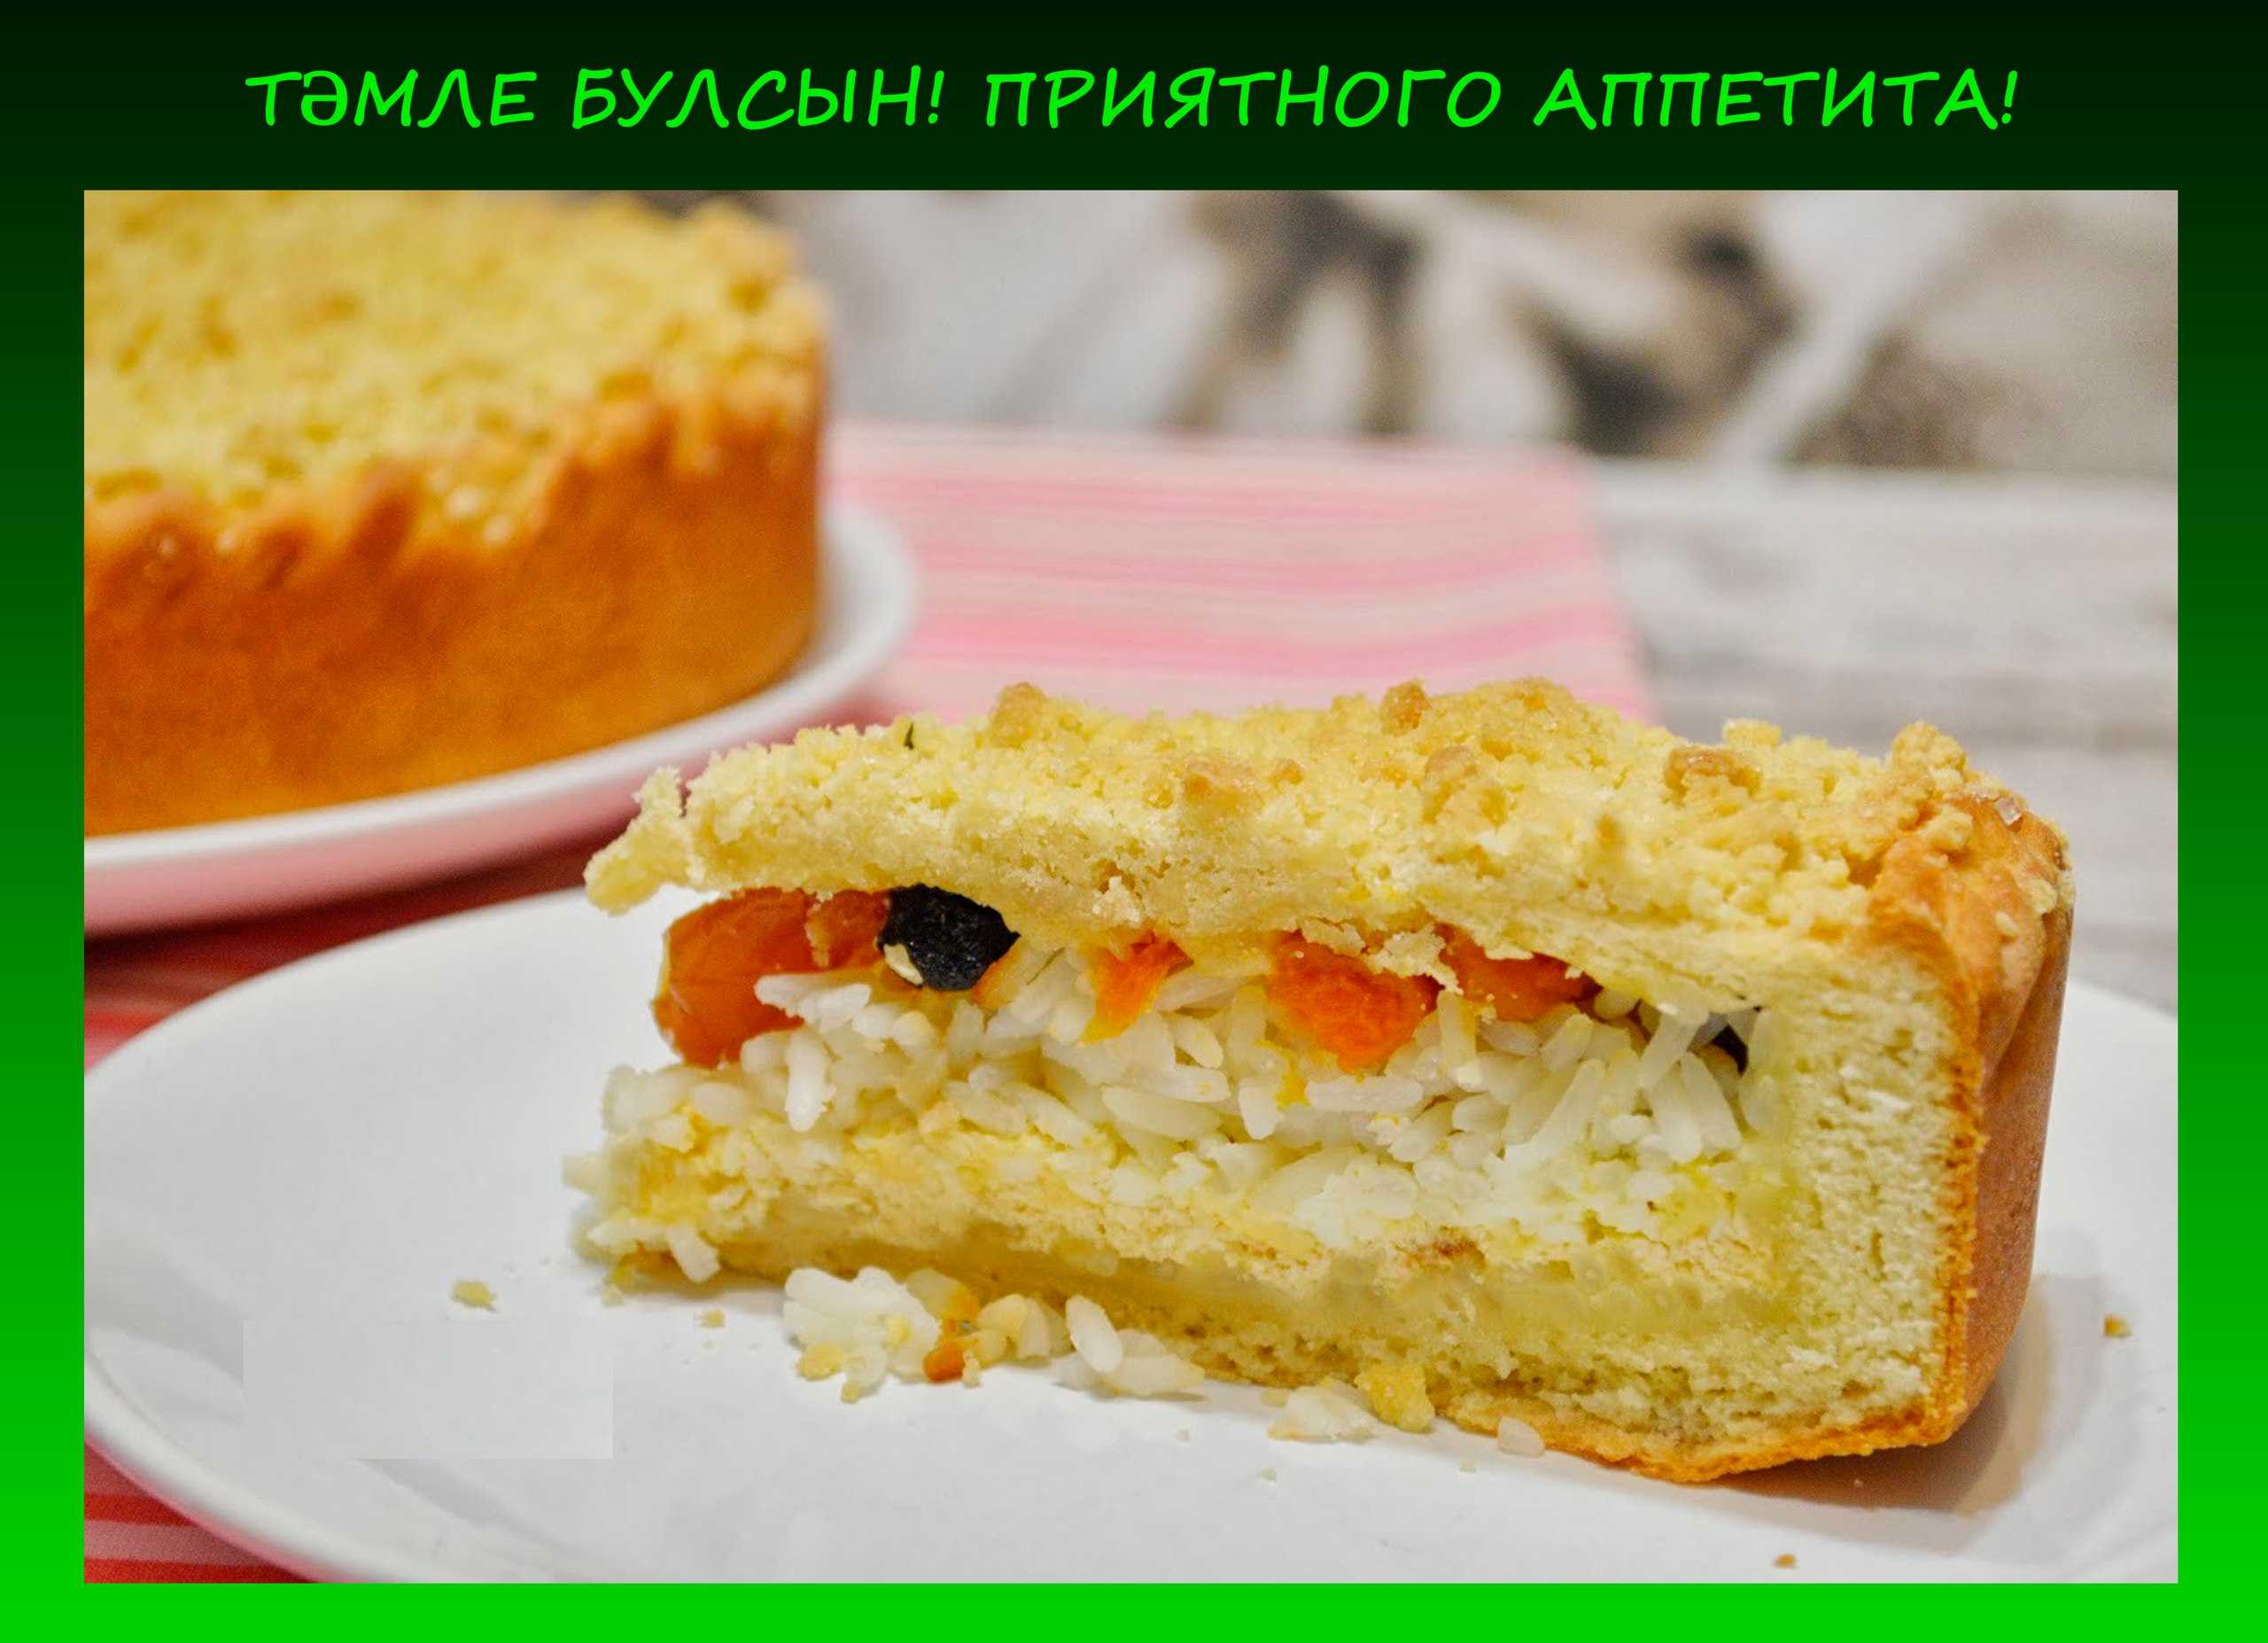 Губадия (татарский праздничный пирог)